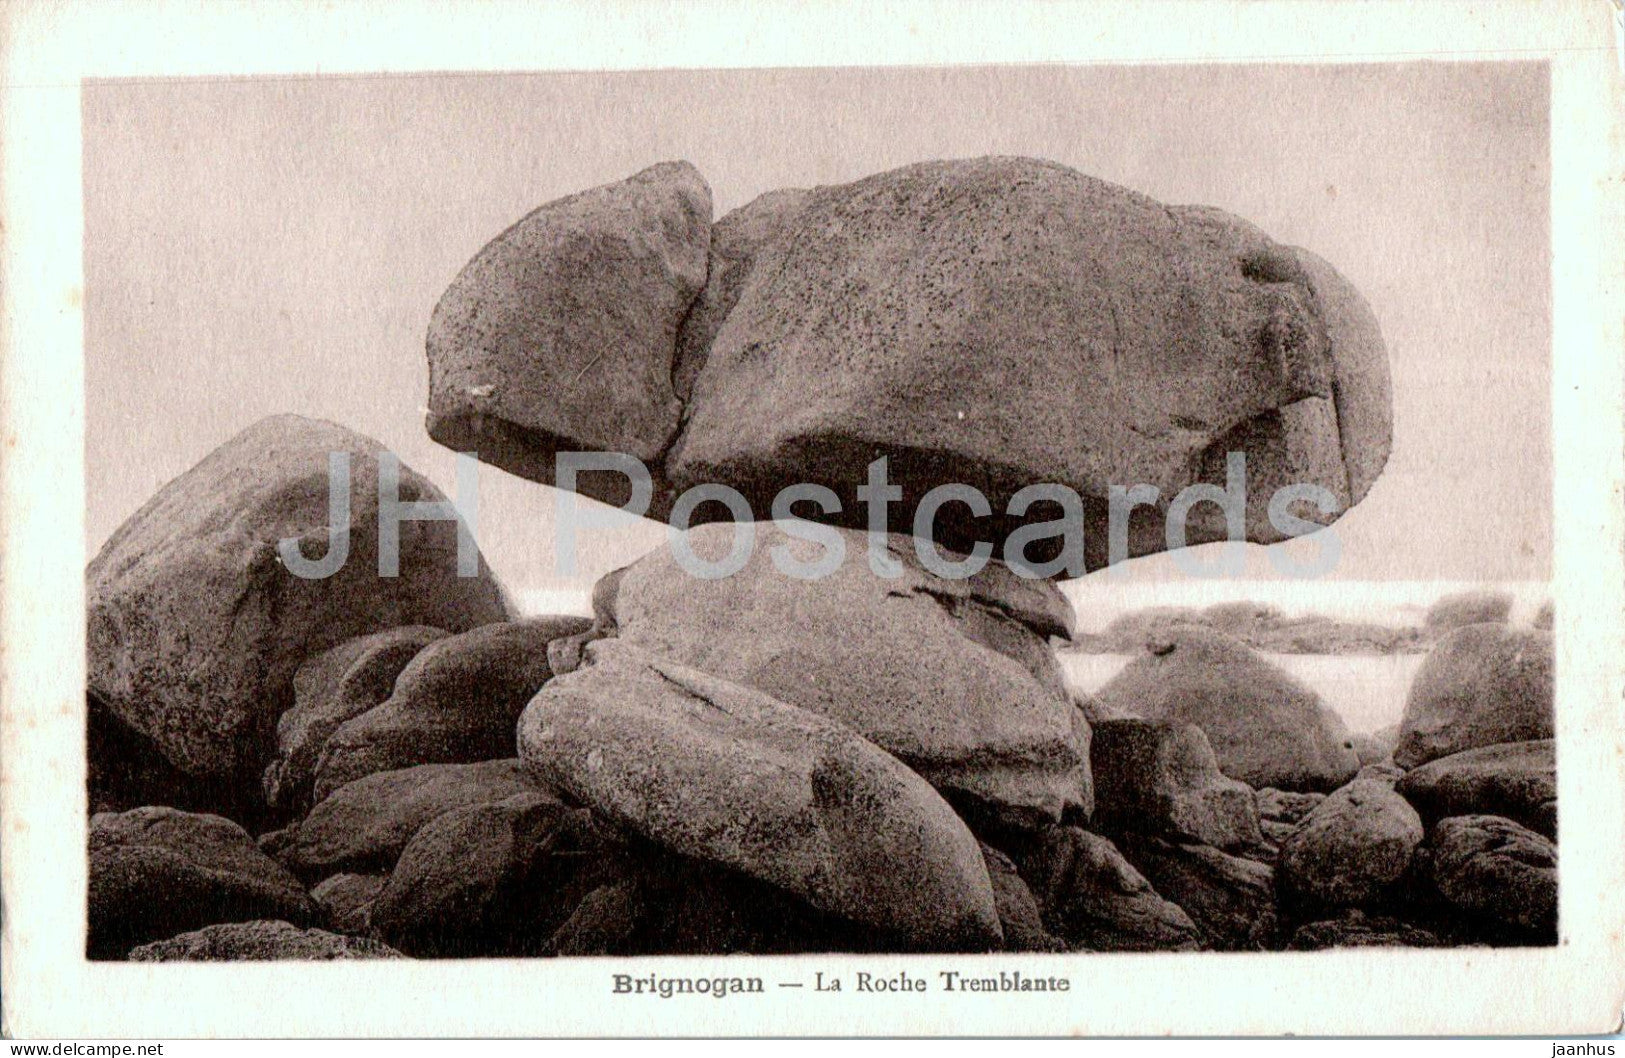 Brignogan - La Roche Tremblante - old postcard - France - unused - JH Postcards